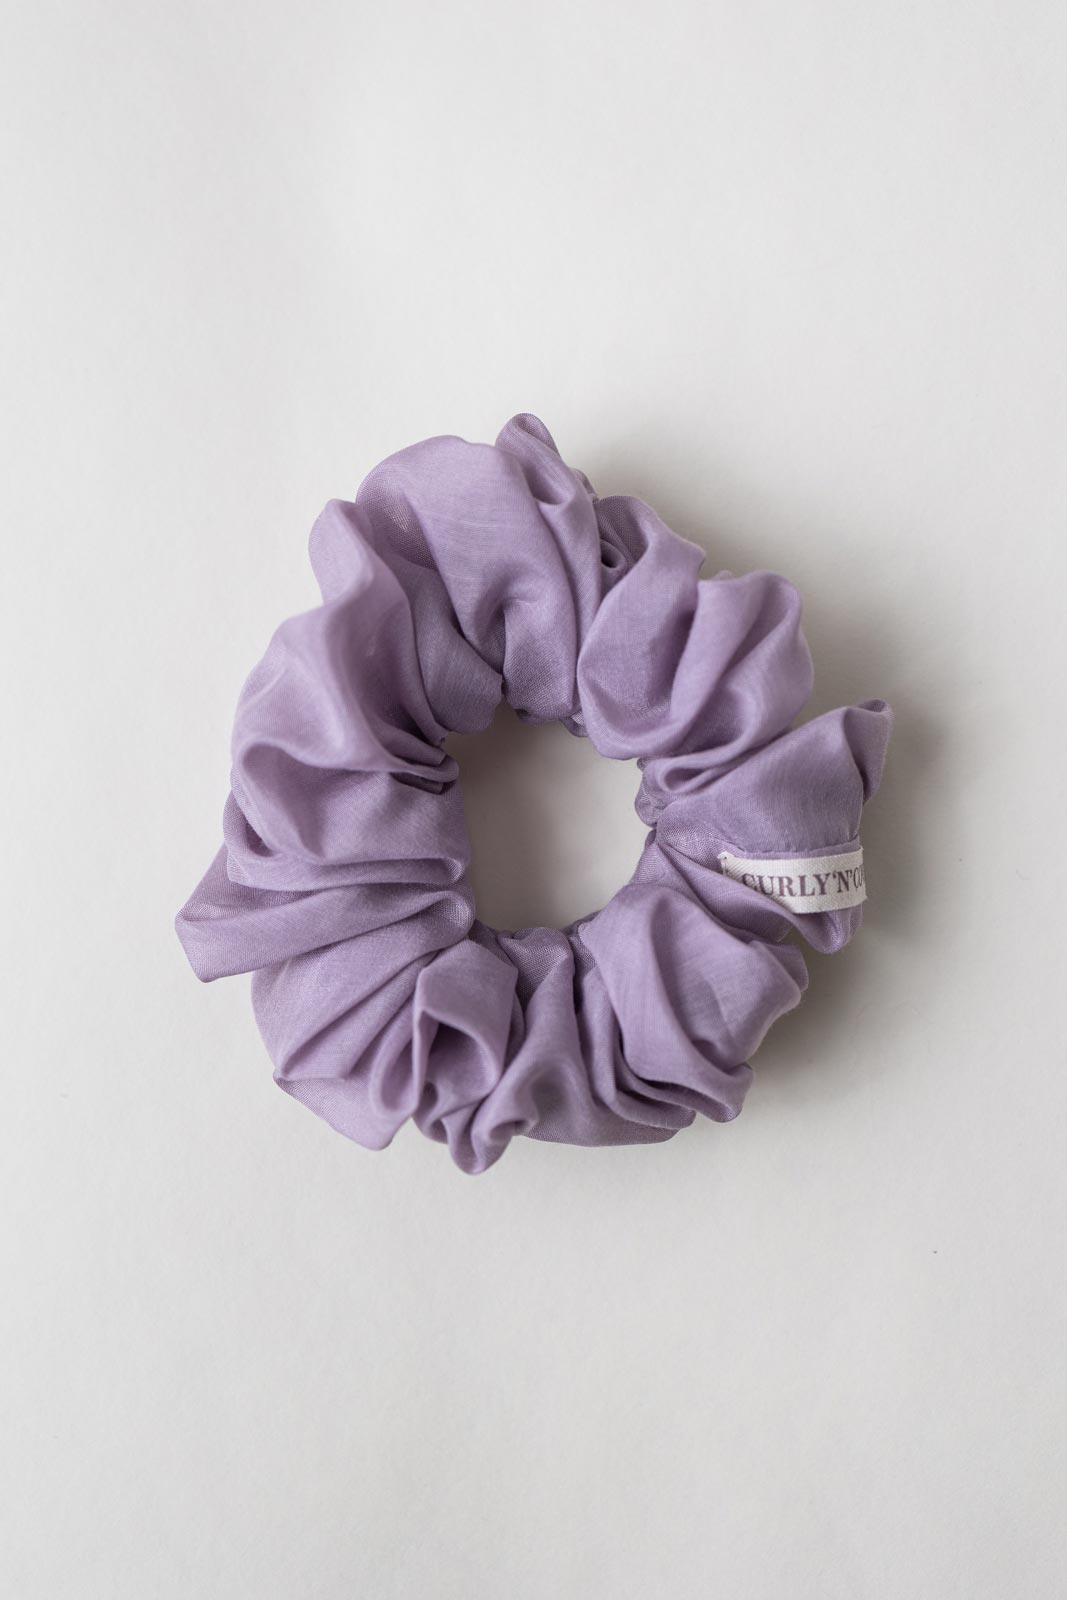 Scrunchie (Cotton-Silk) – Haargummi aus Baumwolle und Seide - Baumwollseide Hellviolett / M